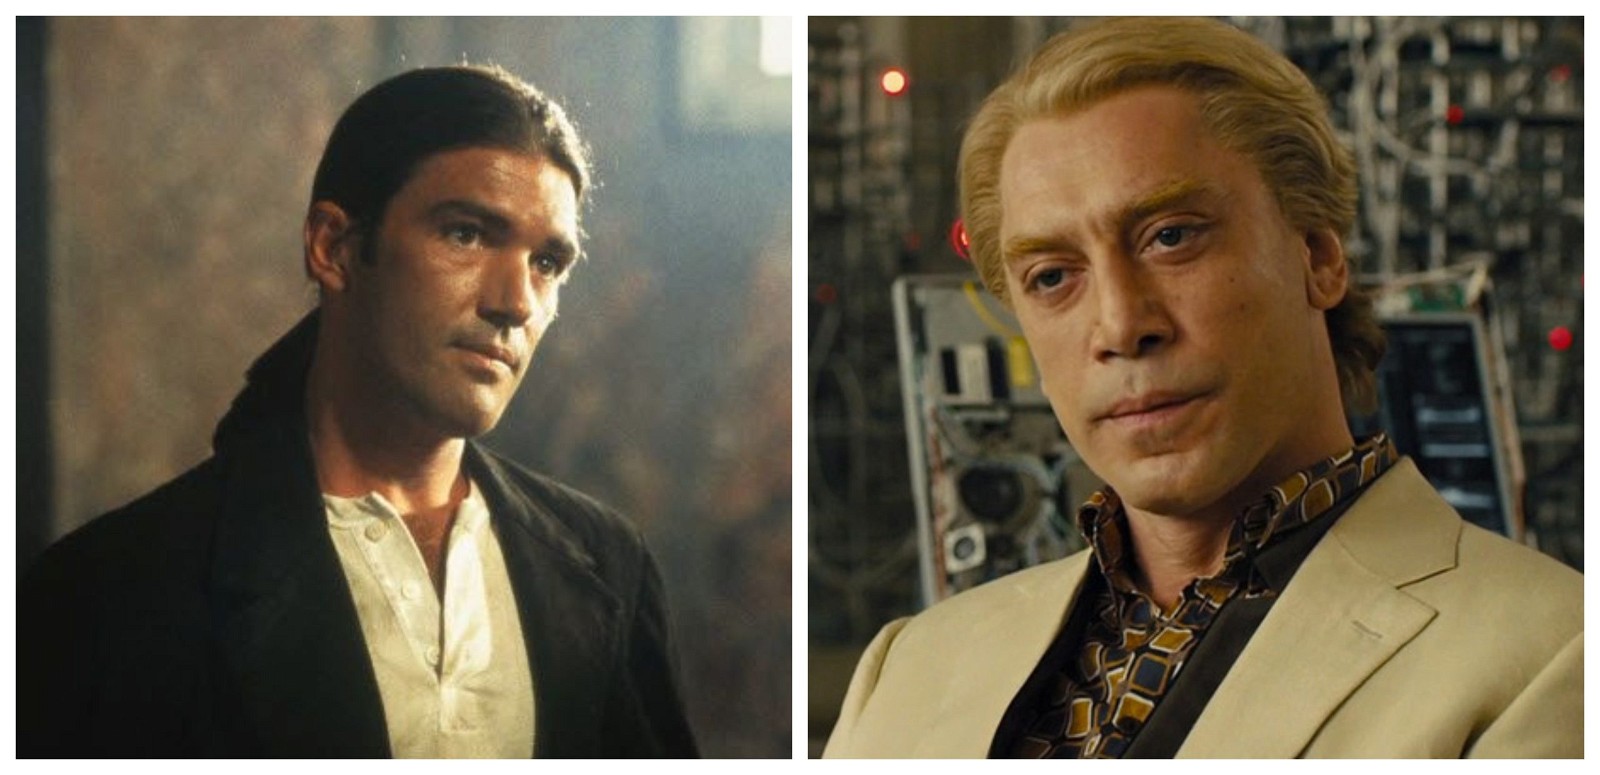 Antonio Banderas as El Mariachi in Desperado and Javier Bardem as Raoul Silva in James Bond film Skyfall